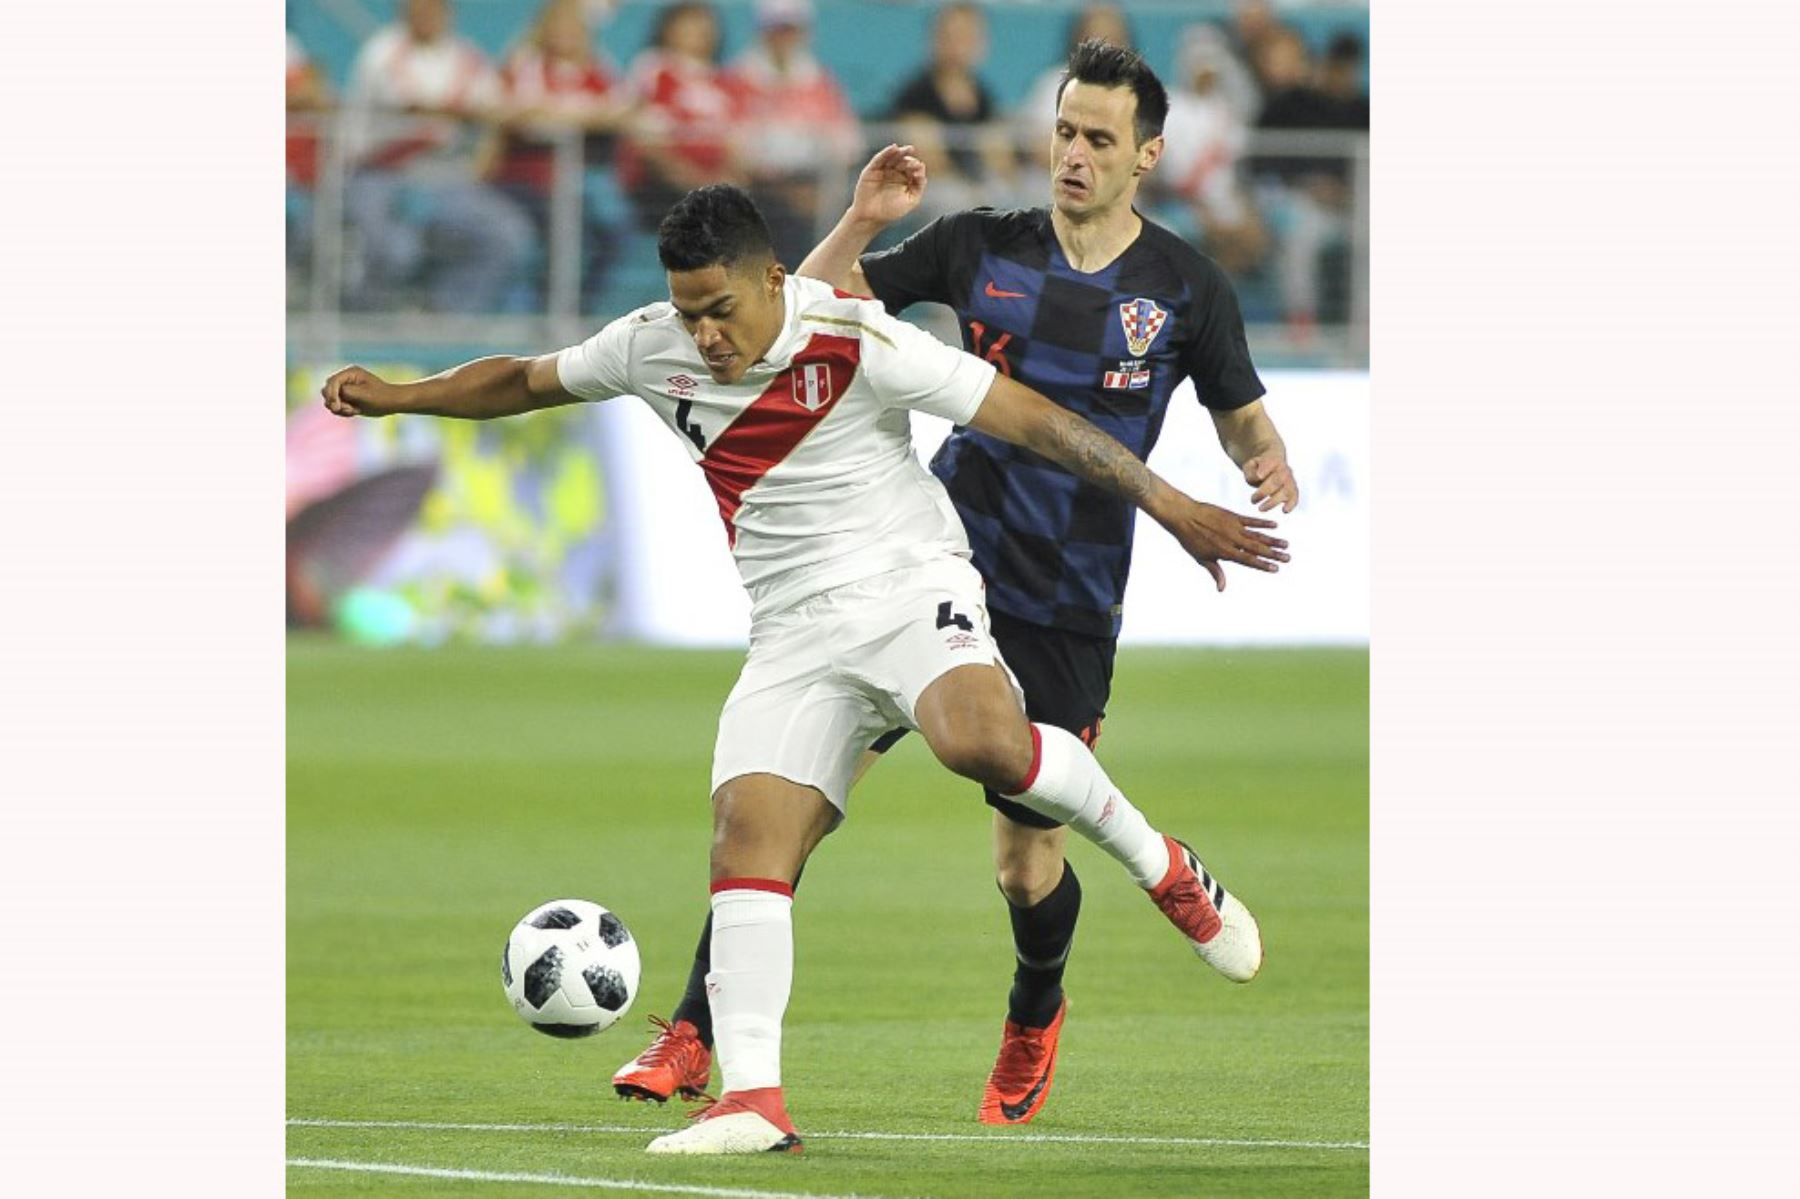 Anderson Santamaría compite por el balón contra Nikola Kalinic de Croacia, durante el amistoso de la Copa Mundial 2018.Foto:AFP